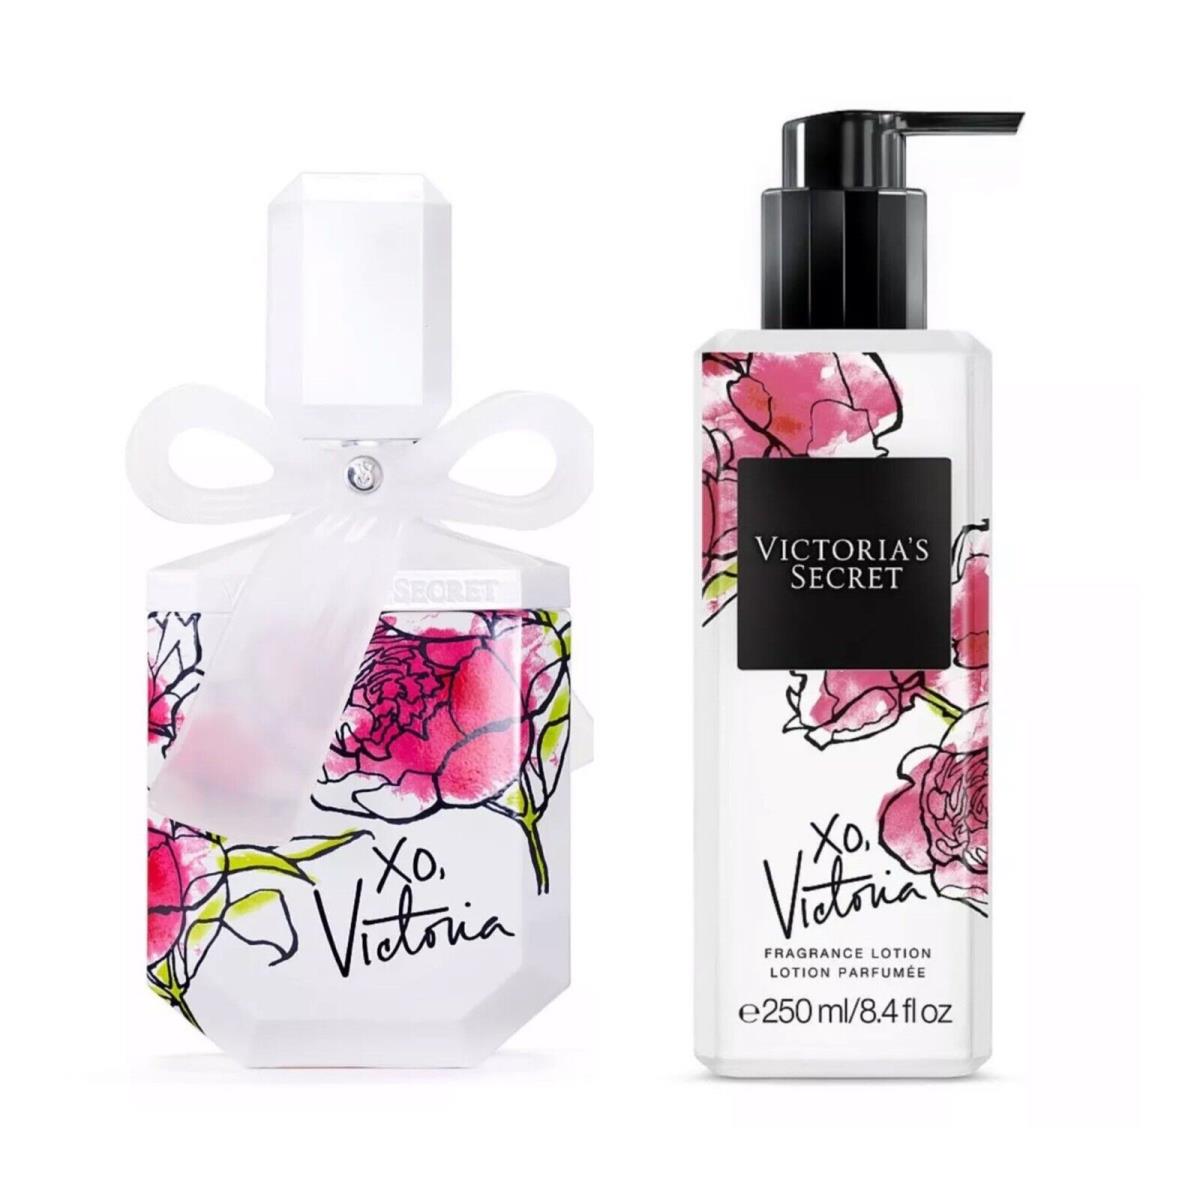 Victoria`s Secret XO Victoria Eau de Parfum 1.7 Fl.oz. and Fragrance Lotion